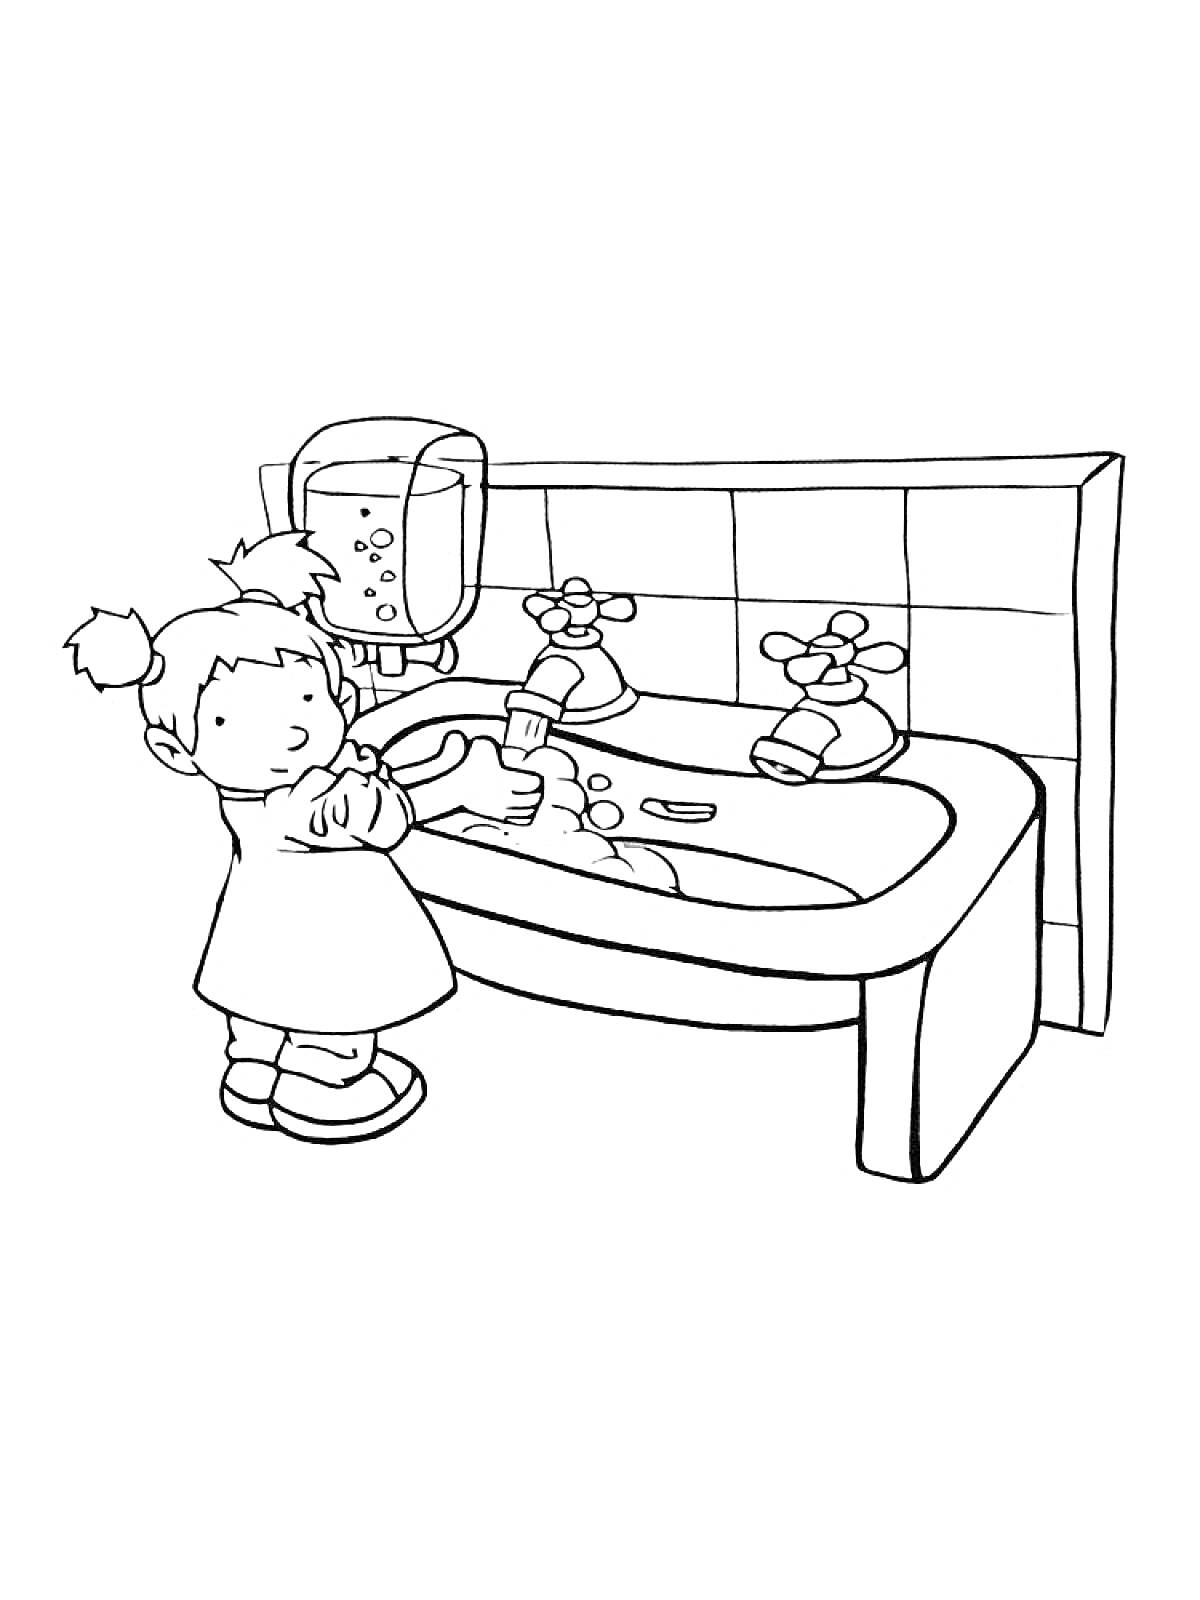 Раскраска Девочка моет руки у раковины с мылом и краном